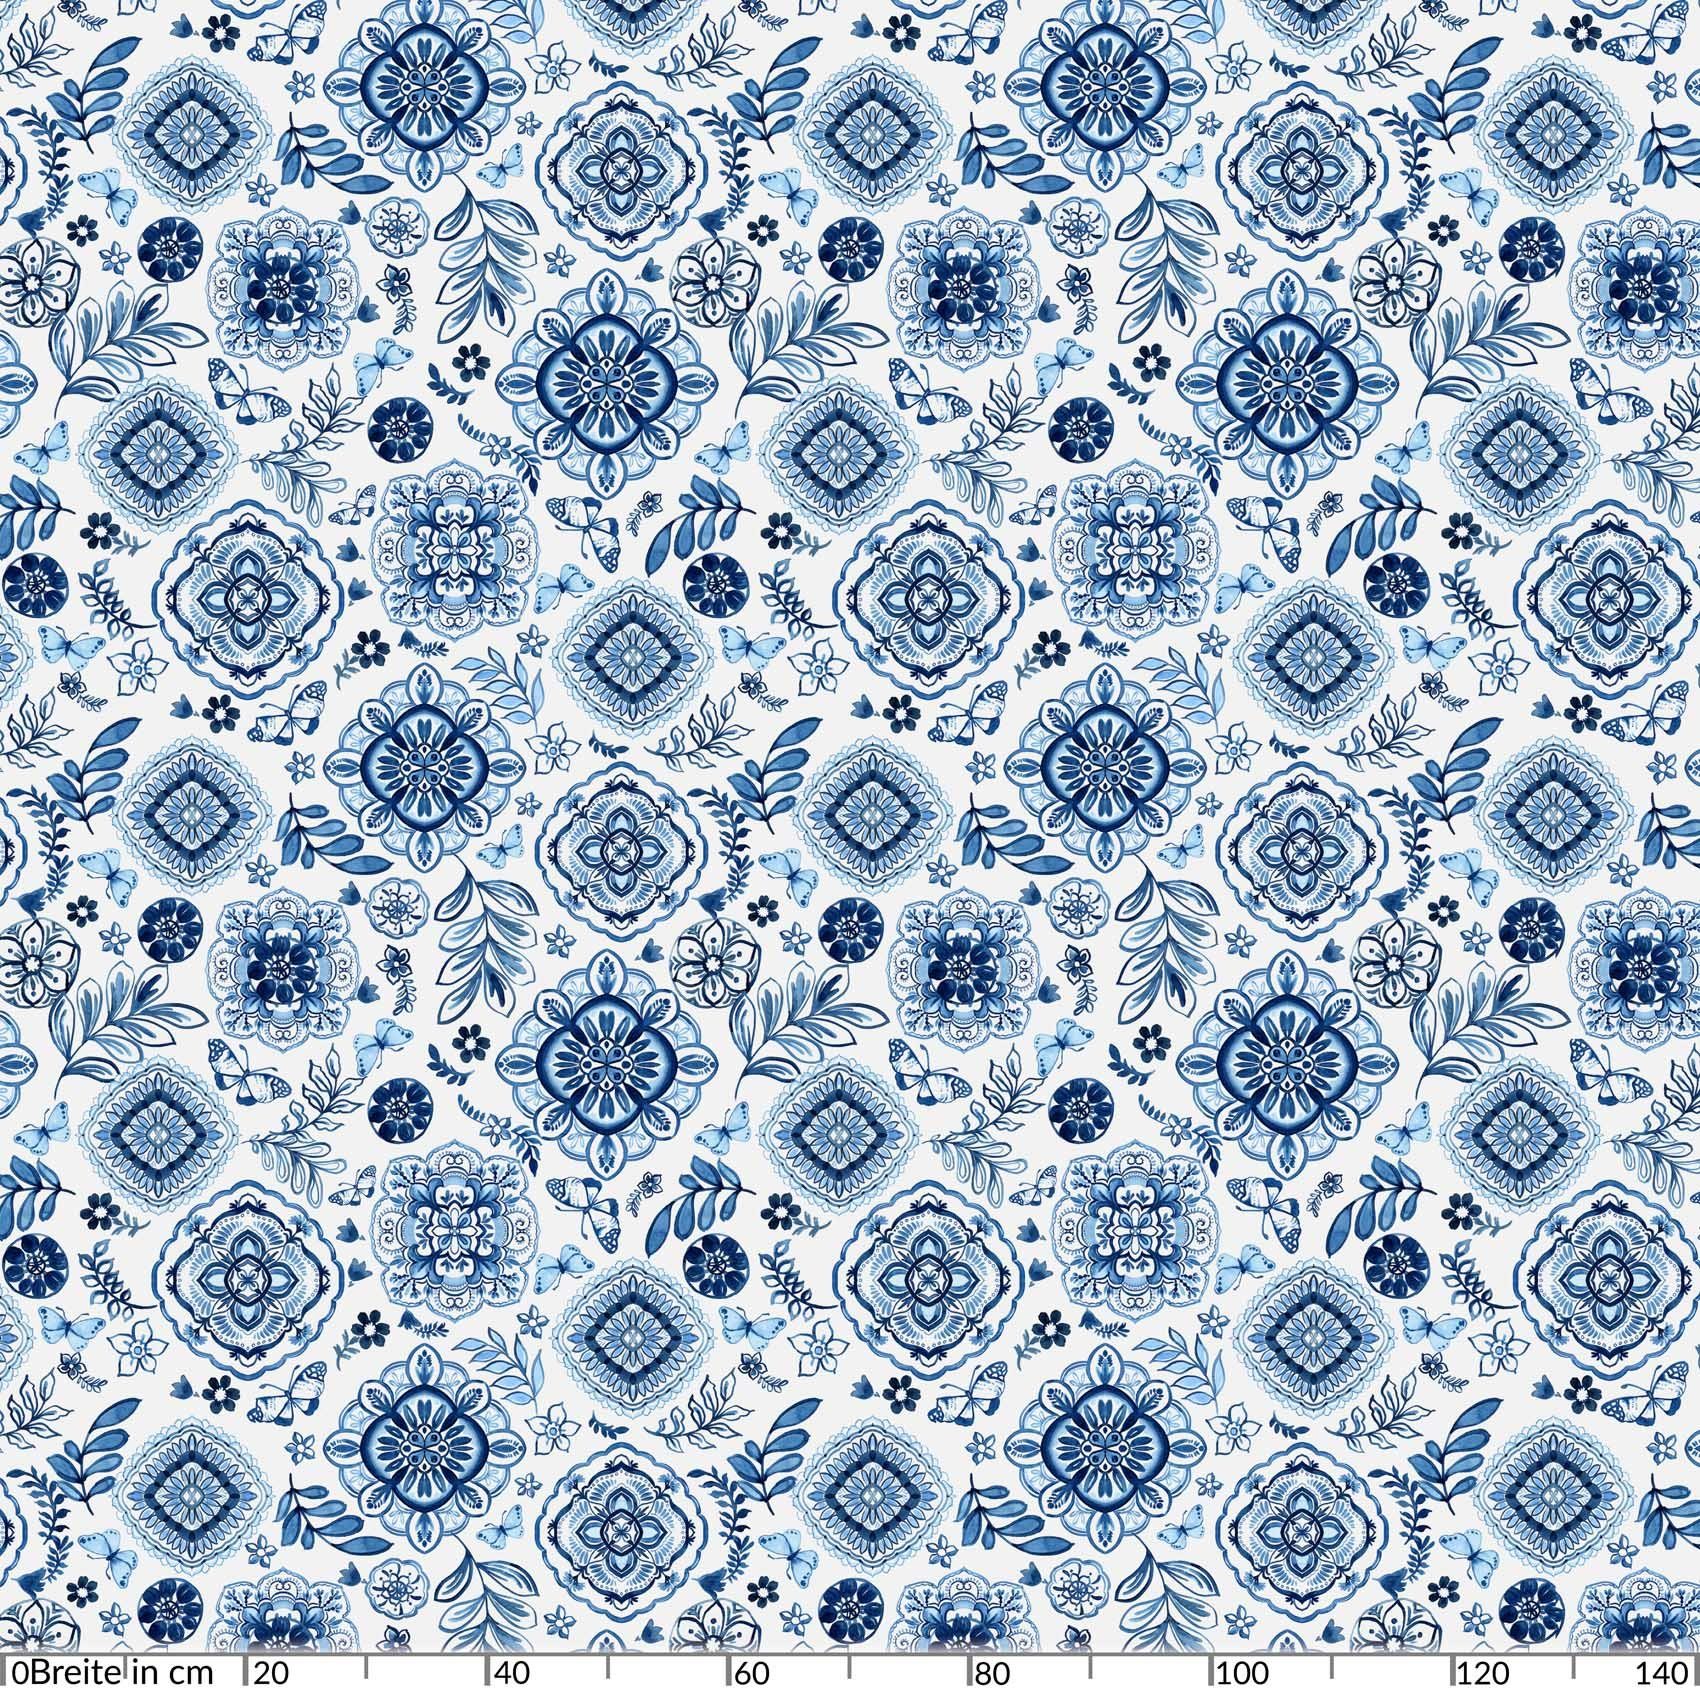 Blau Ornamente Wasserabweisend Robust Breite Glatt 140, Wachstuch Tischdecke Tischdecke ANRO